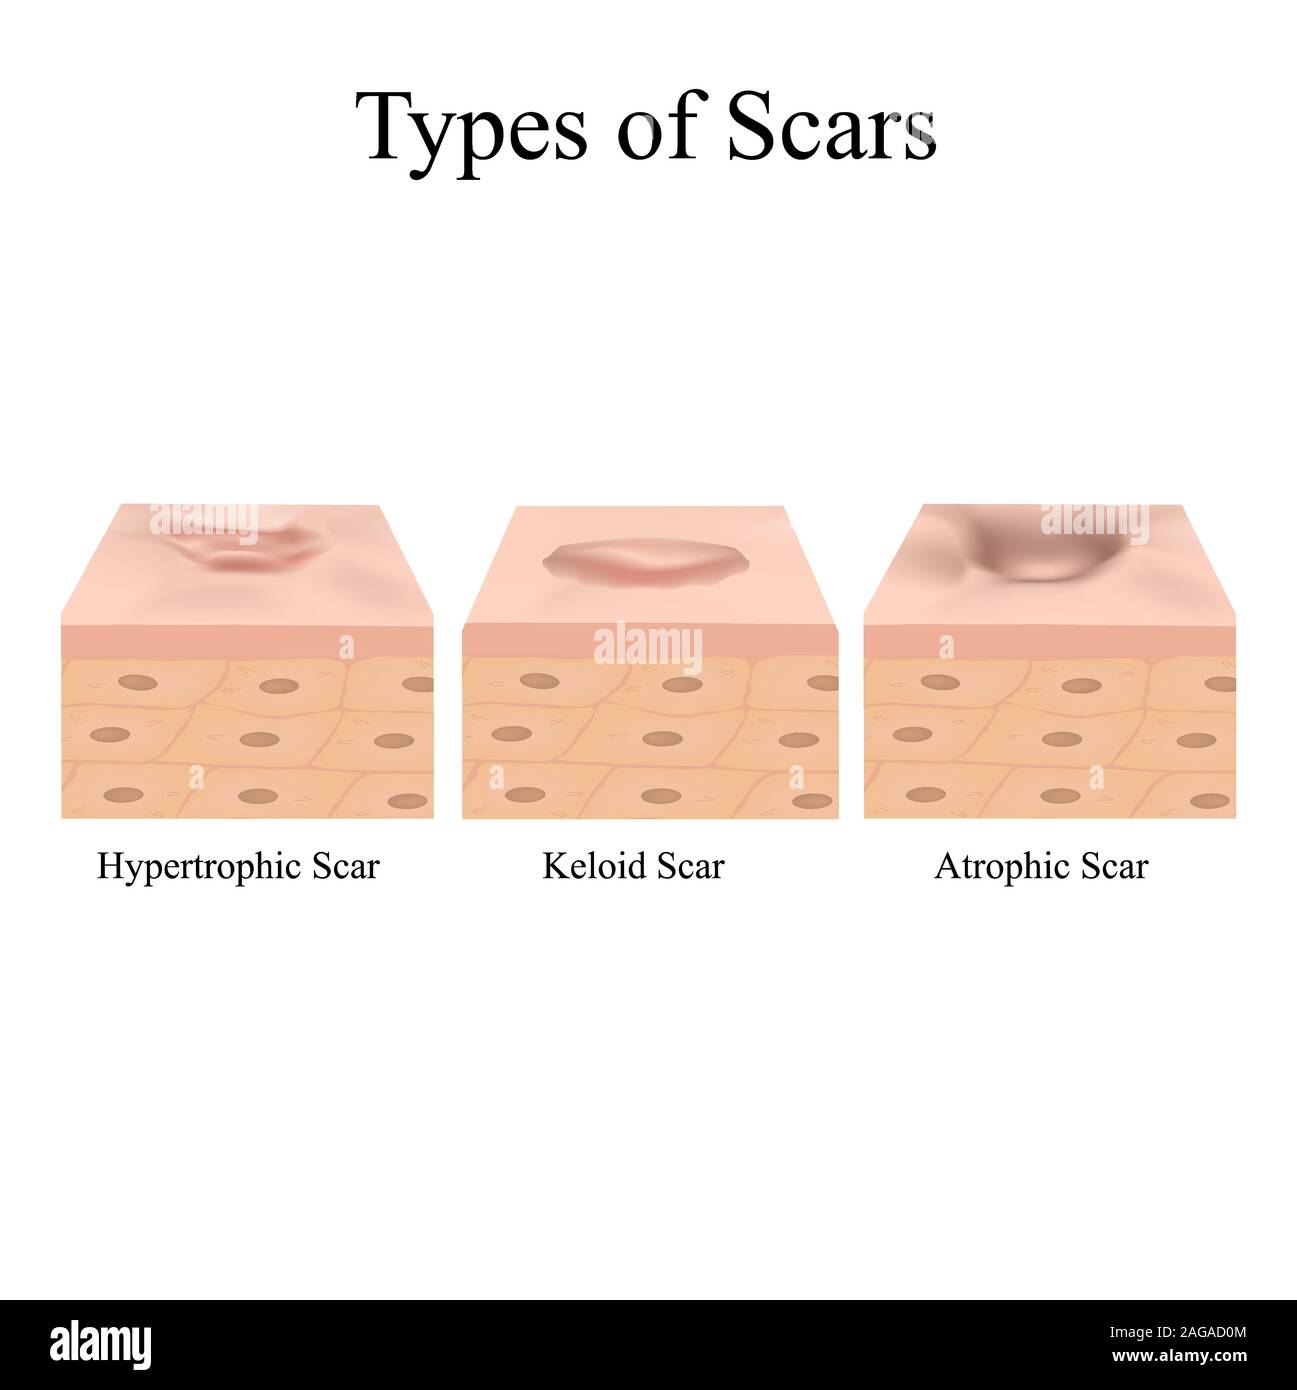 Keloid Scar From Acne